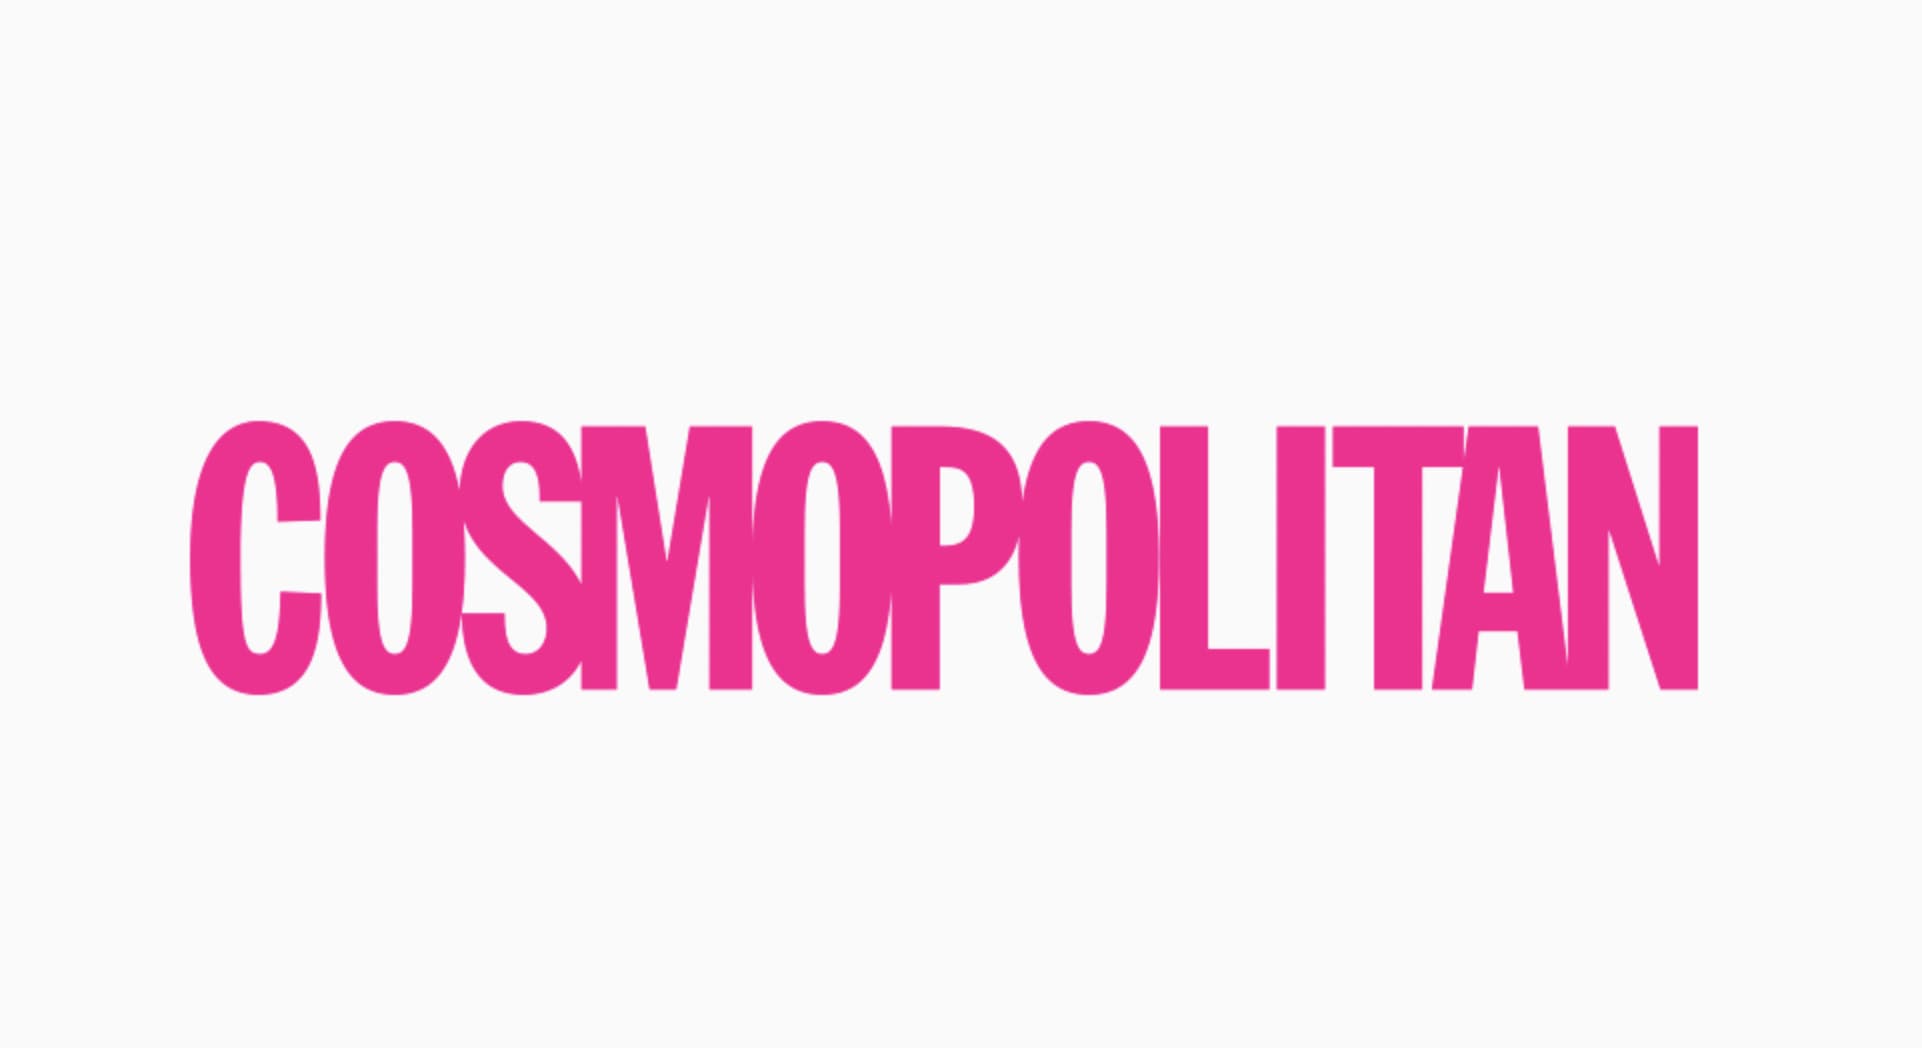 Ejemplo de psicología del color en logo - Cosmopolitan